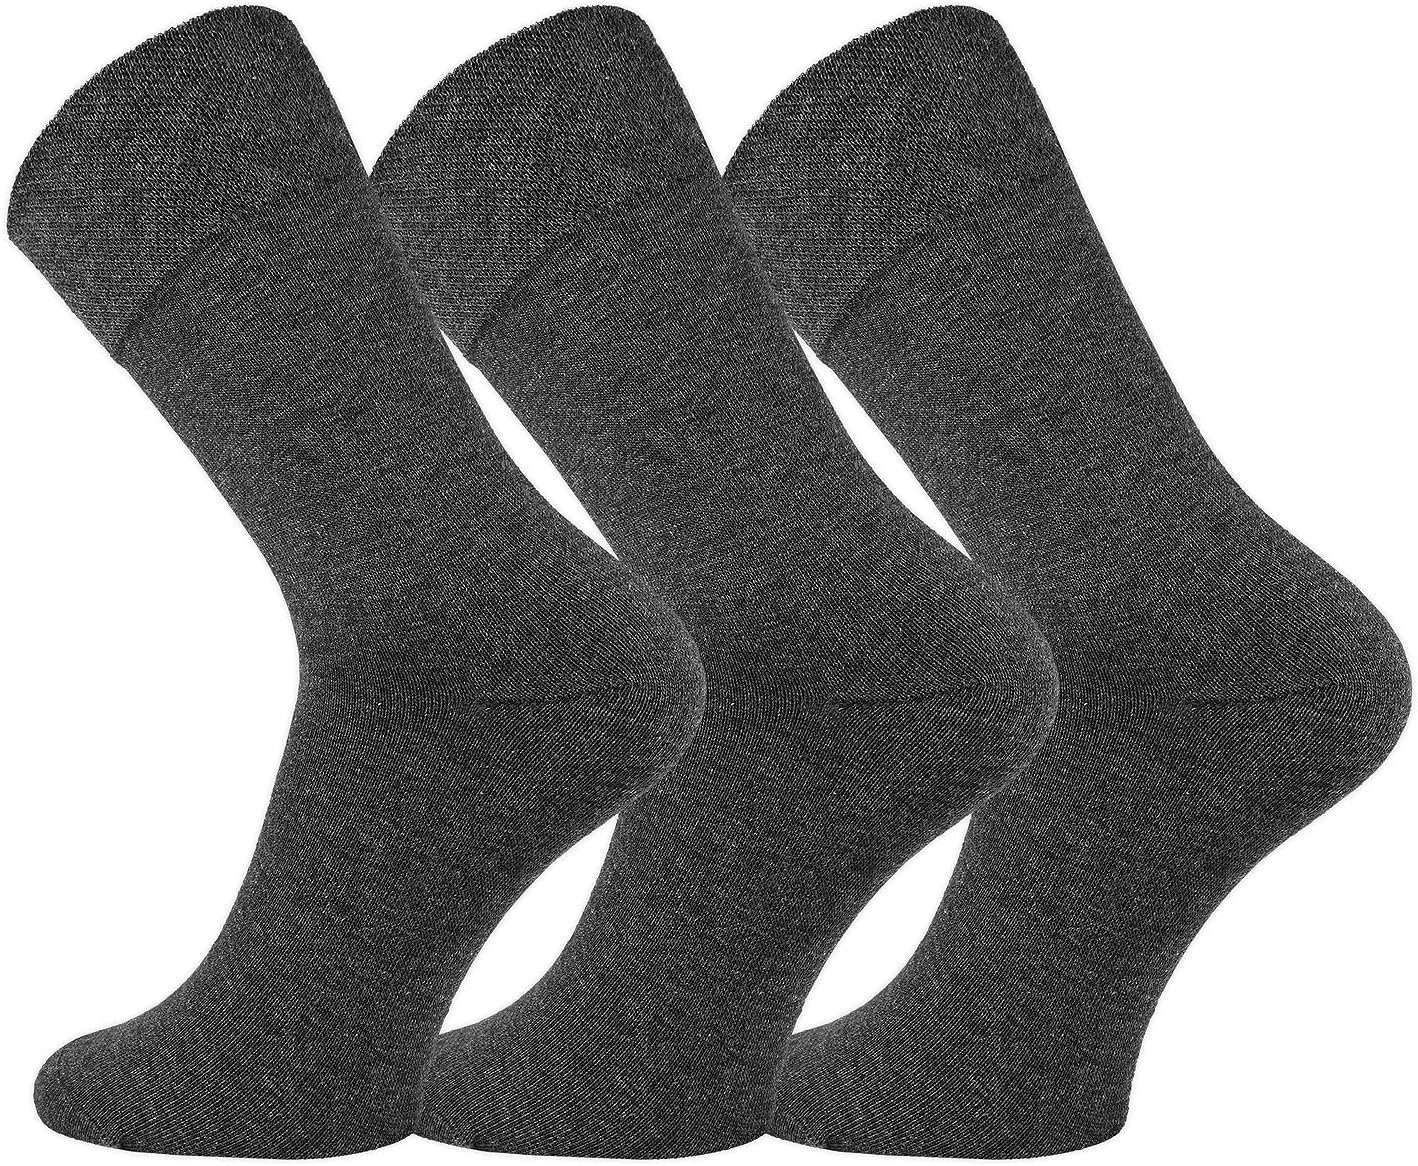 FussFreunde Basicsocken 6 Paar Baumwoll-Socken mit breitem Komfort Piqué-Bund Anthrazit